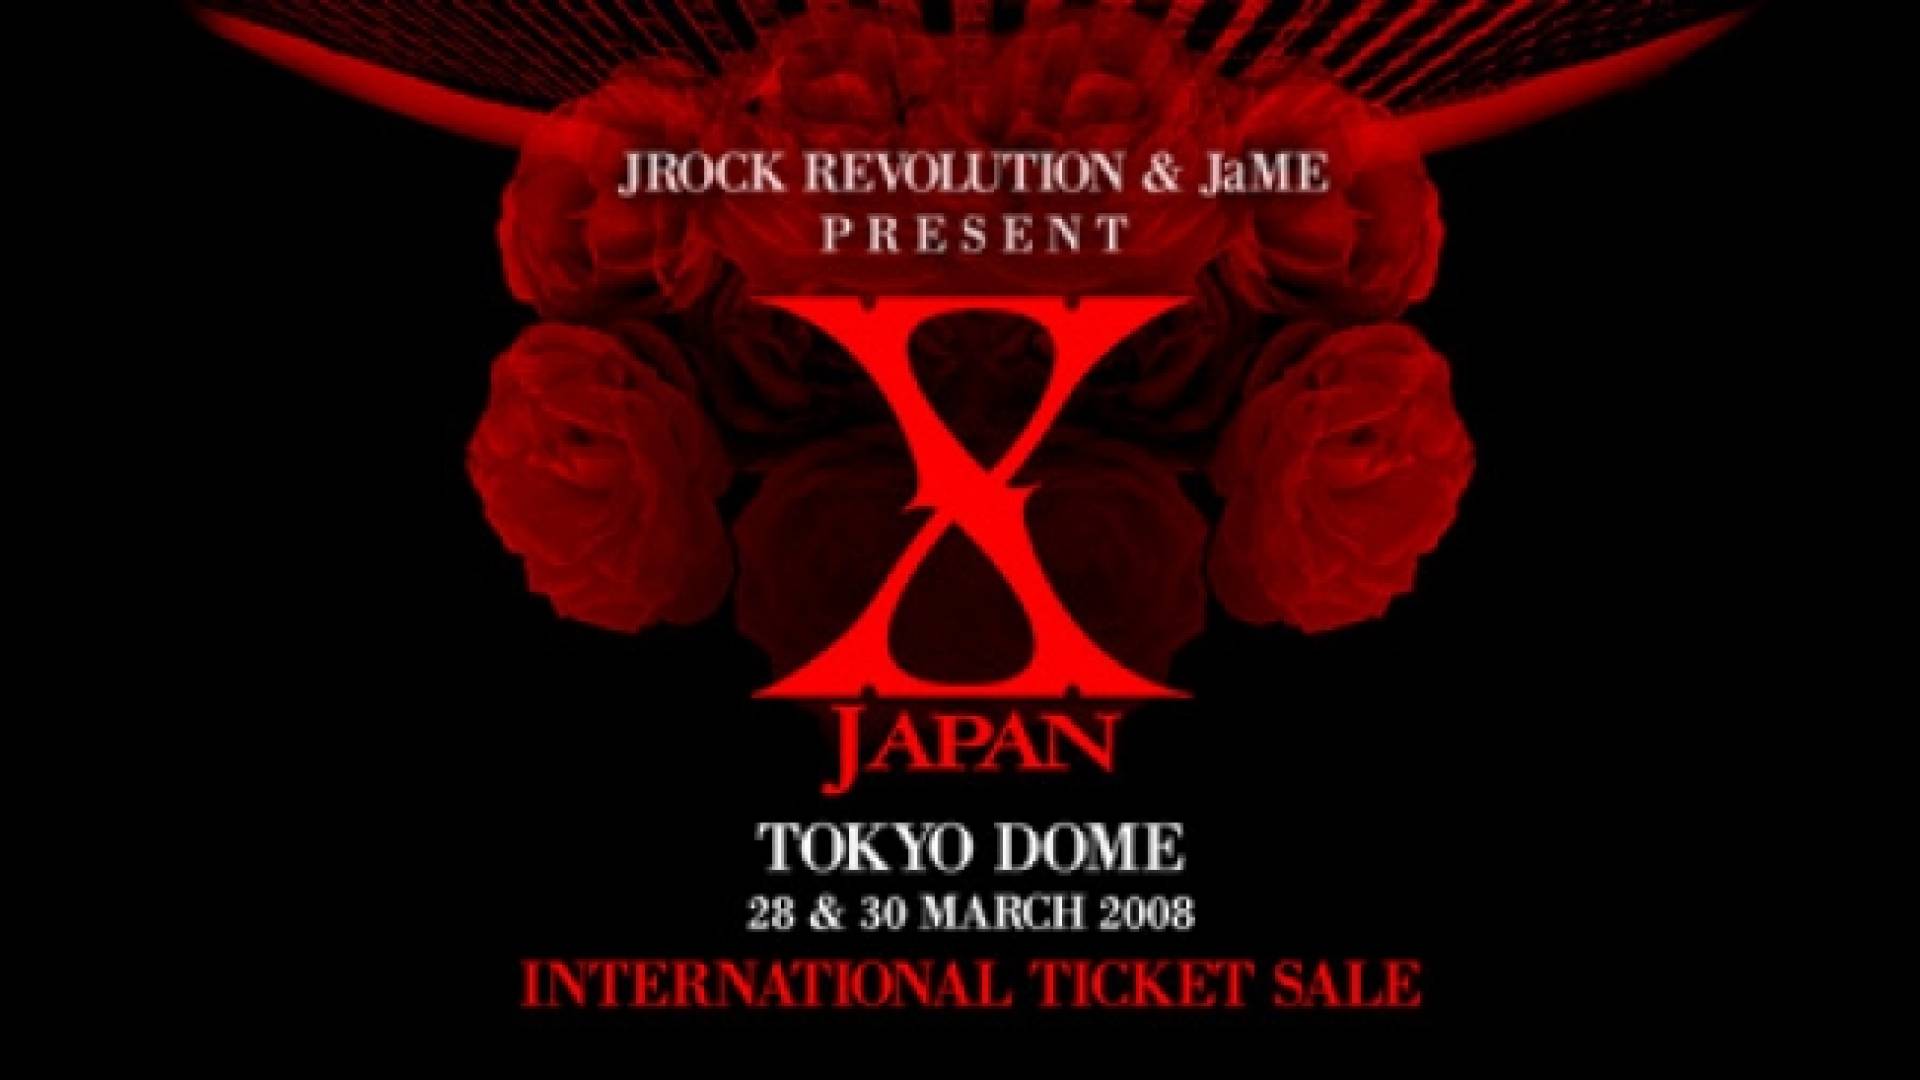 Jrr Jame And Emg X Japan Ticket Sales Information